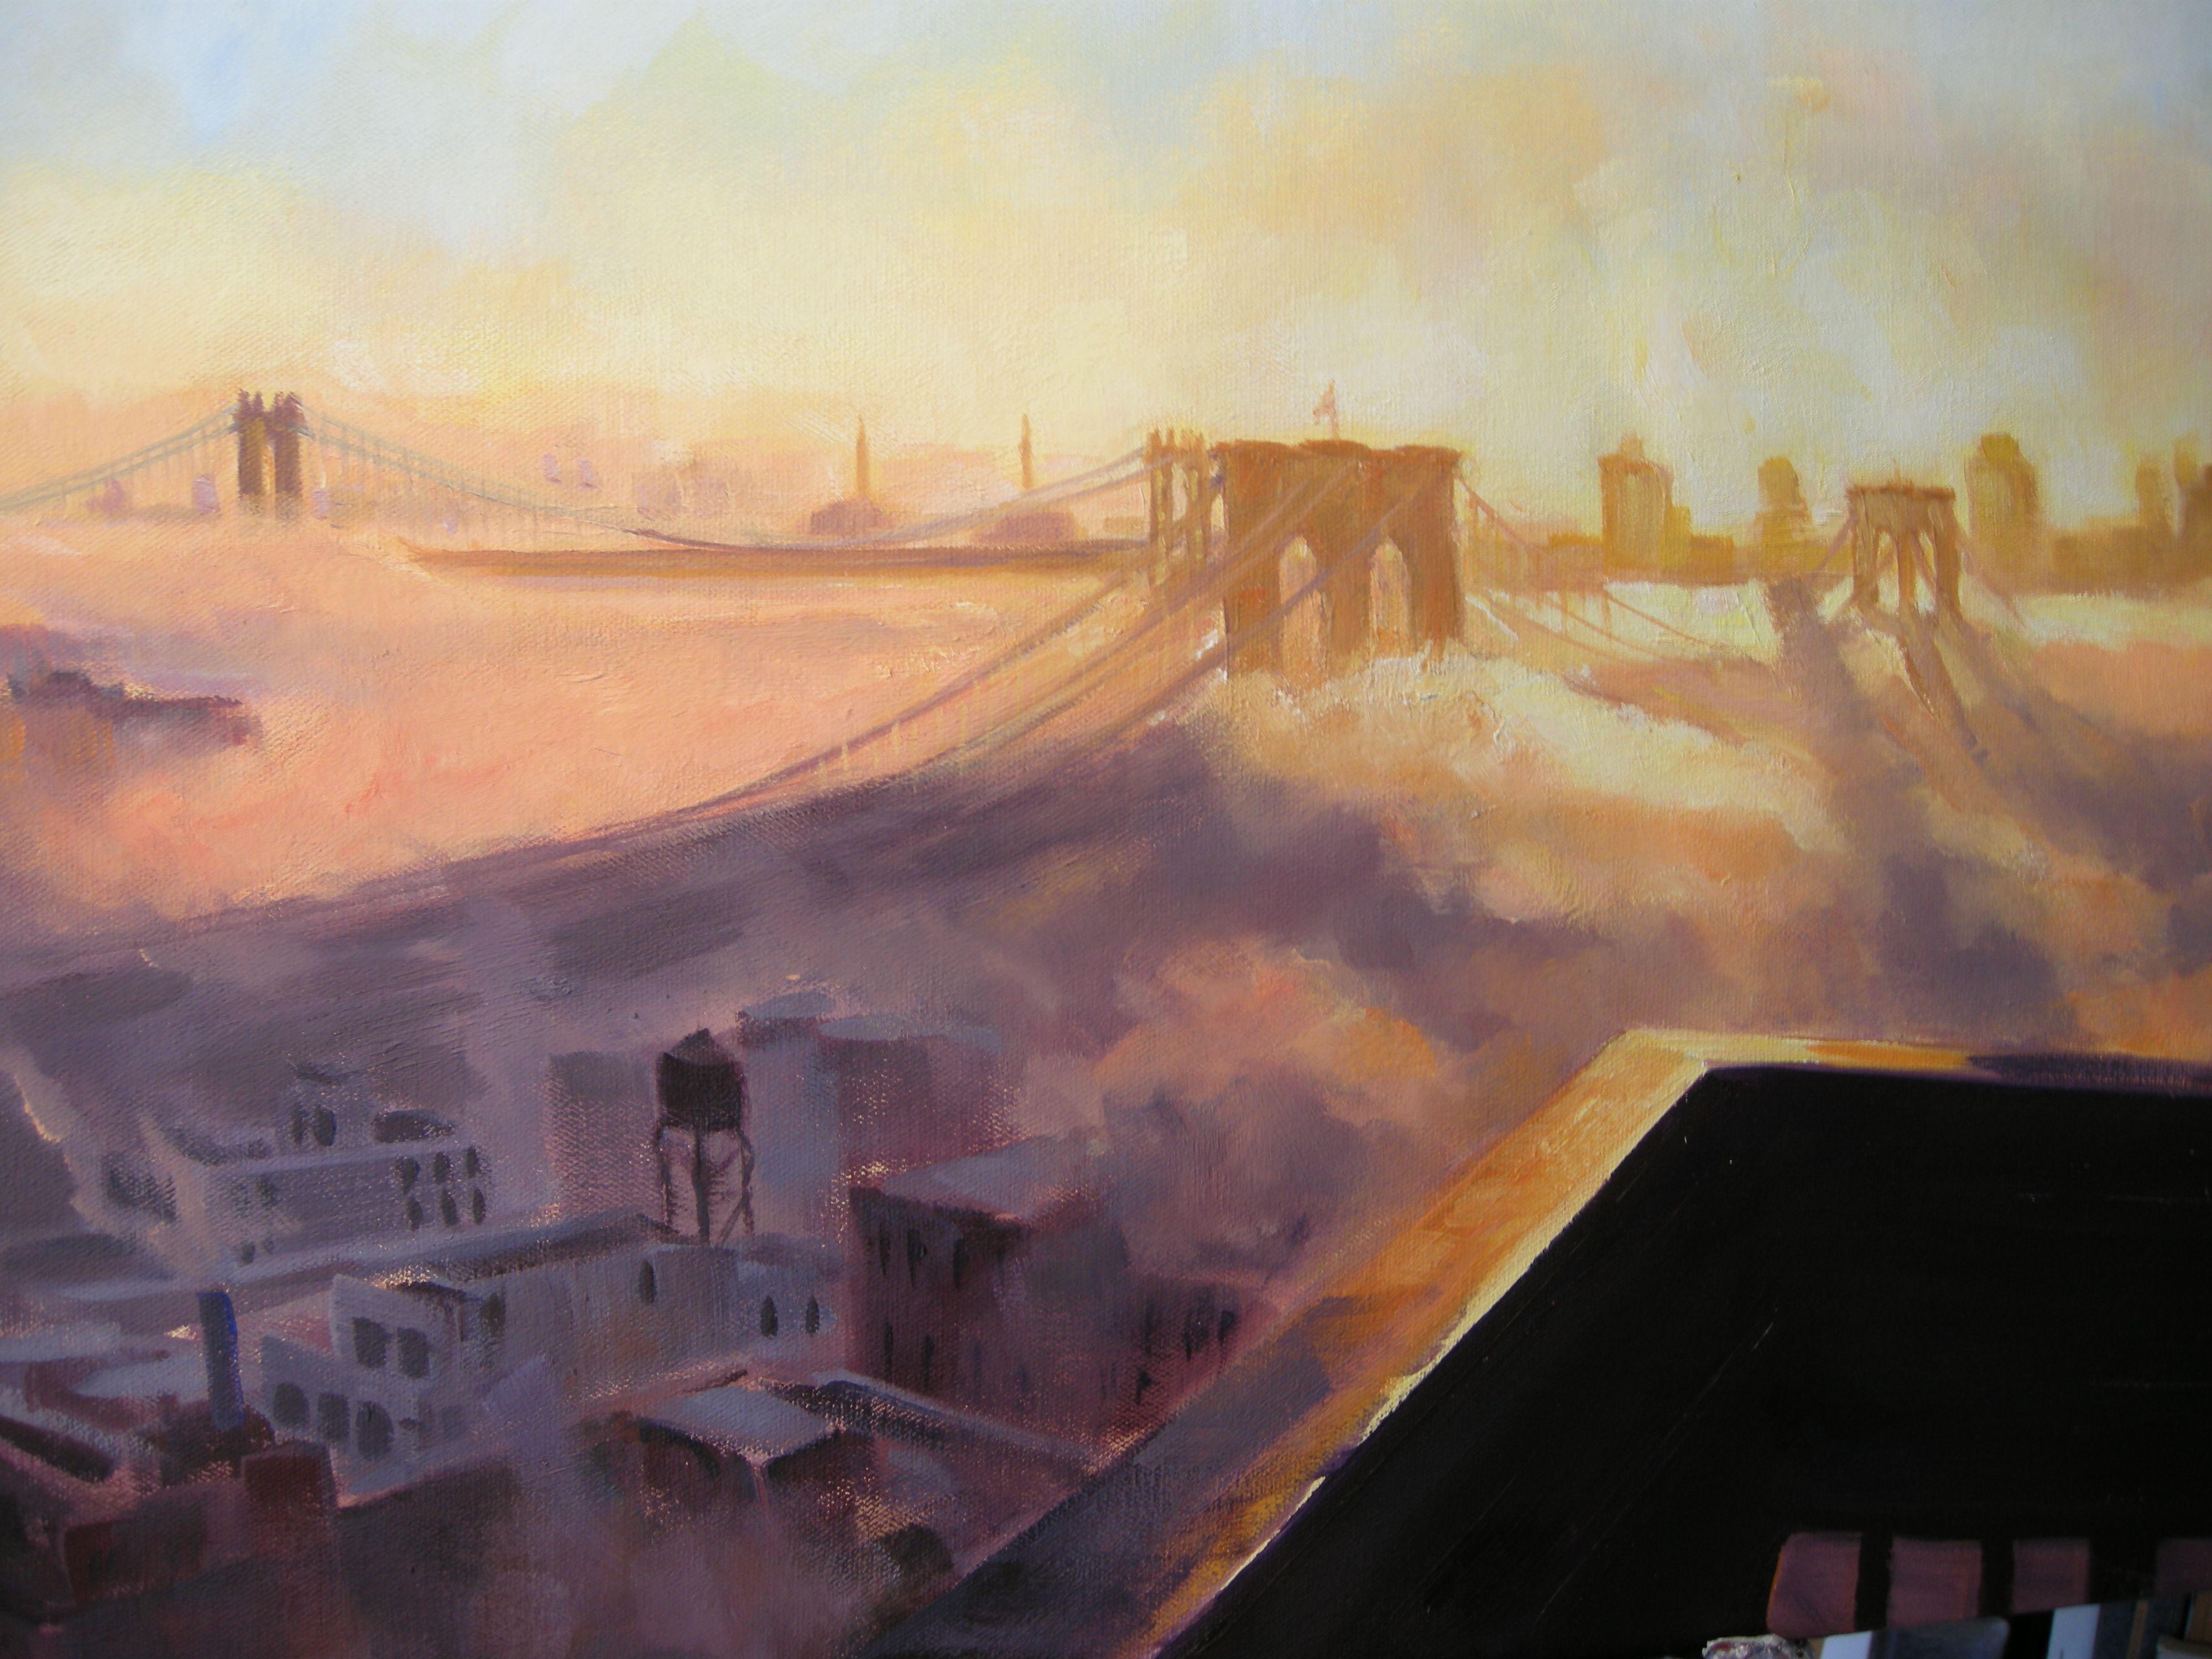 Sunrise Through the Fog, Painting, Oil on Canvas 3